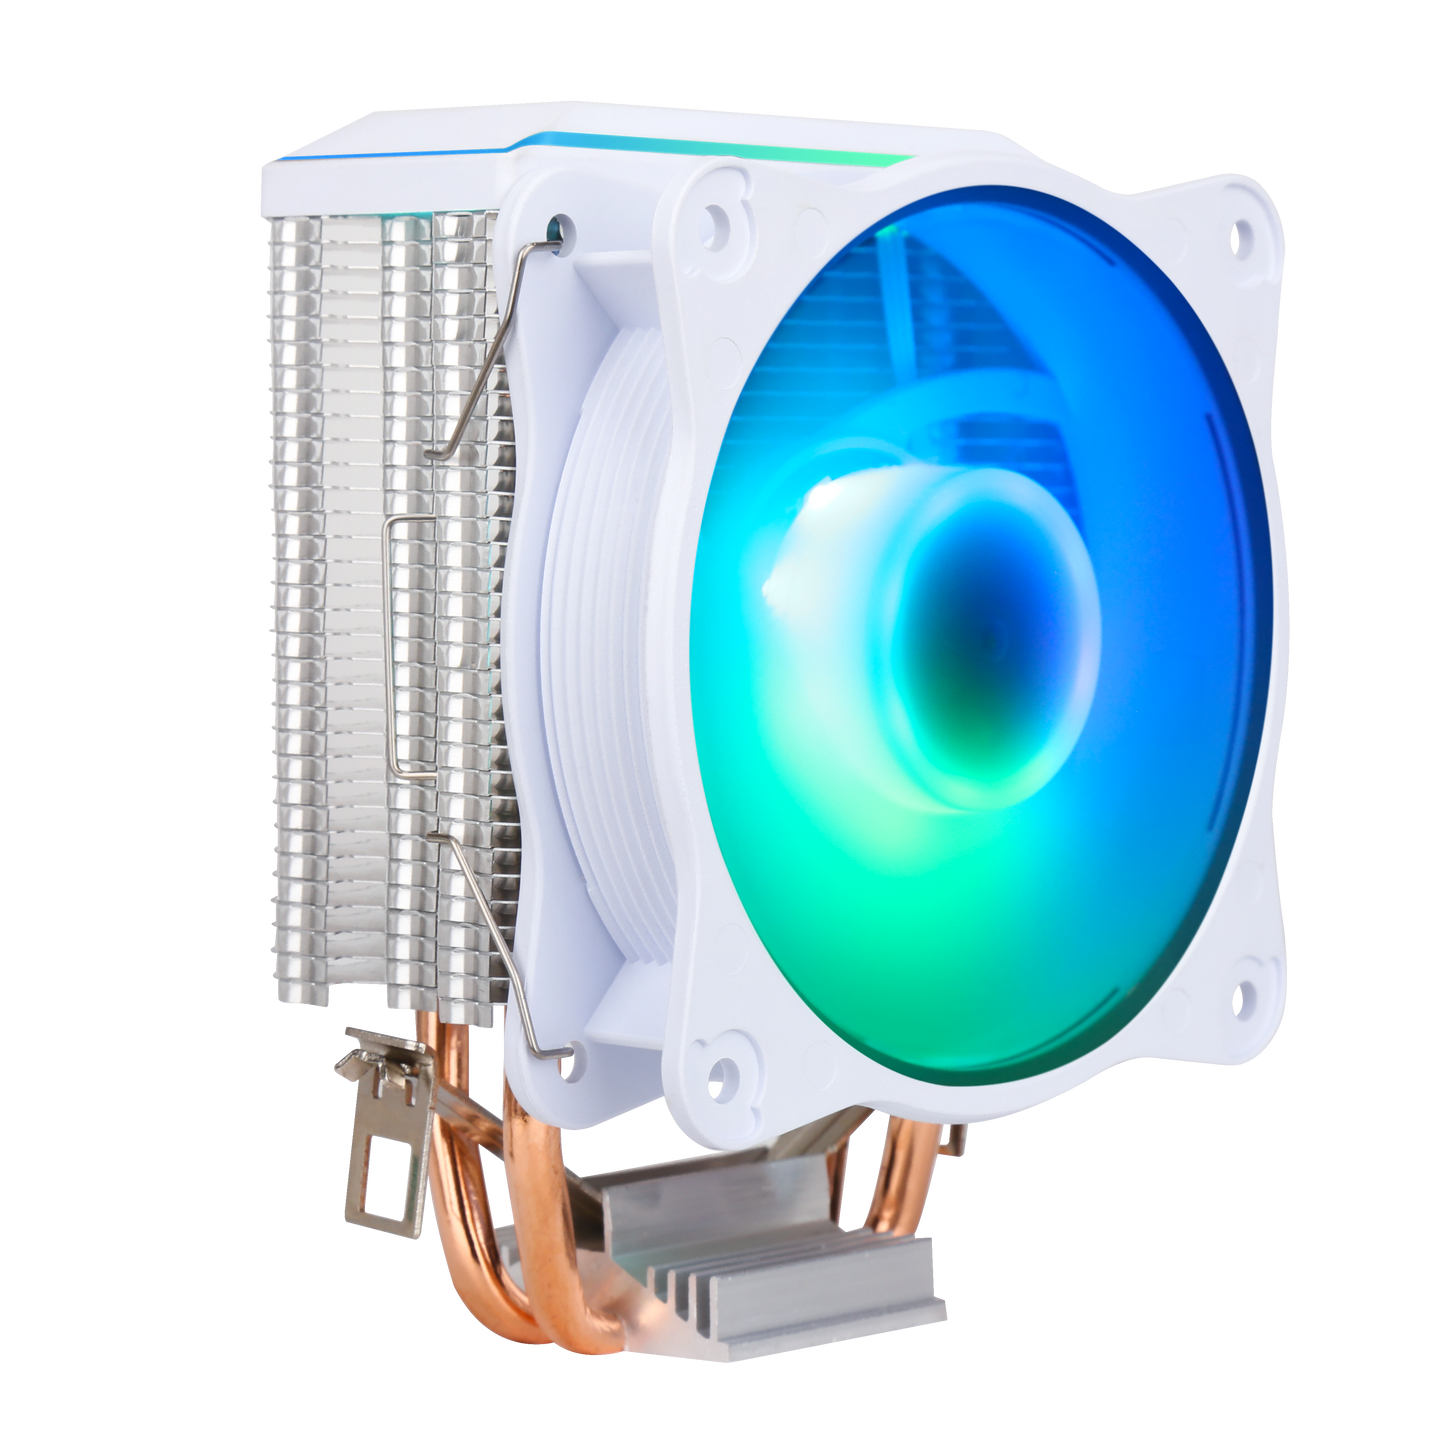 SAMA KA200D CPU Air Cooler